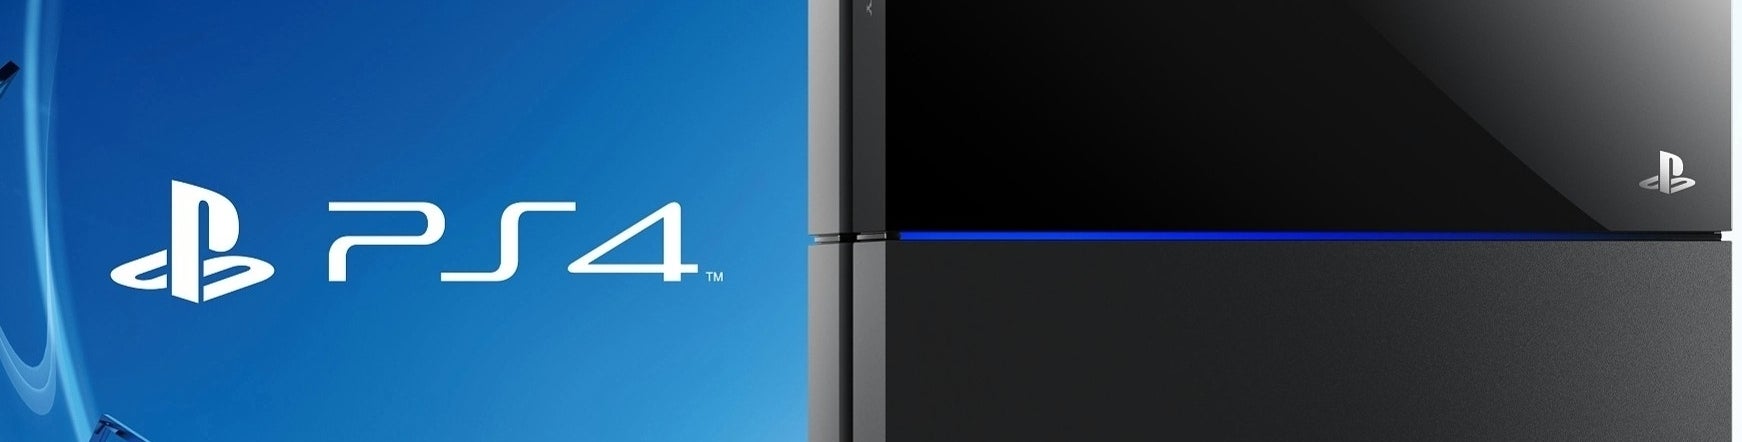 Afbeeldingen van Verkoop PlayStation 4 bereikt zes miljoen